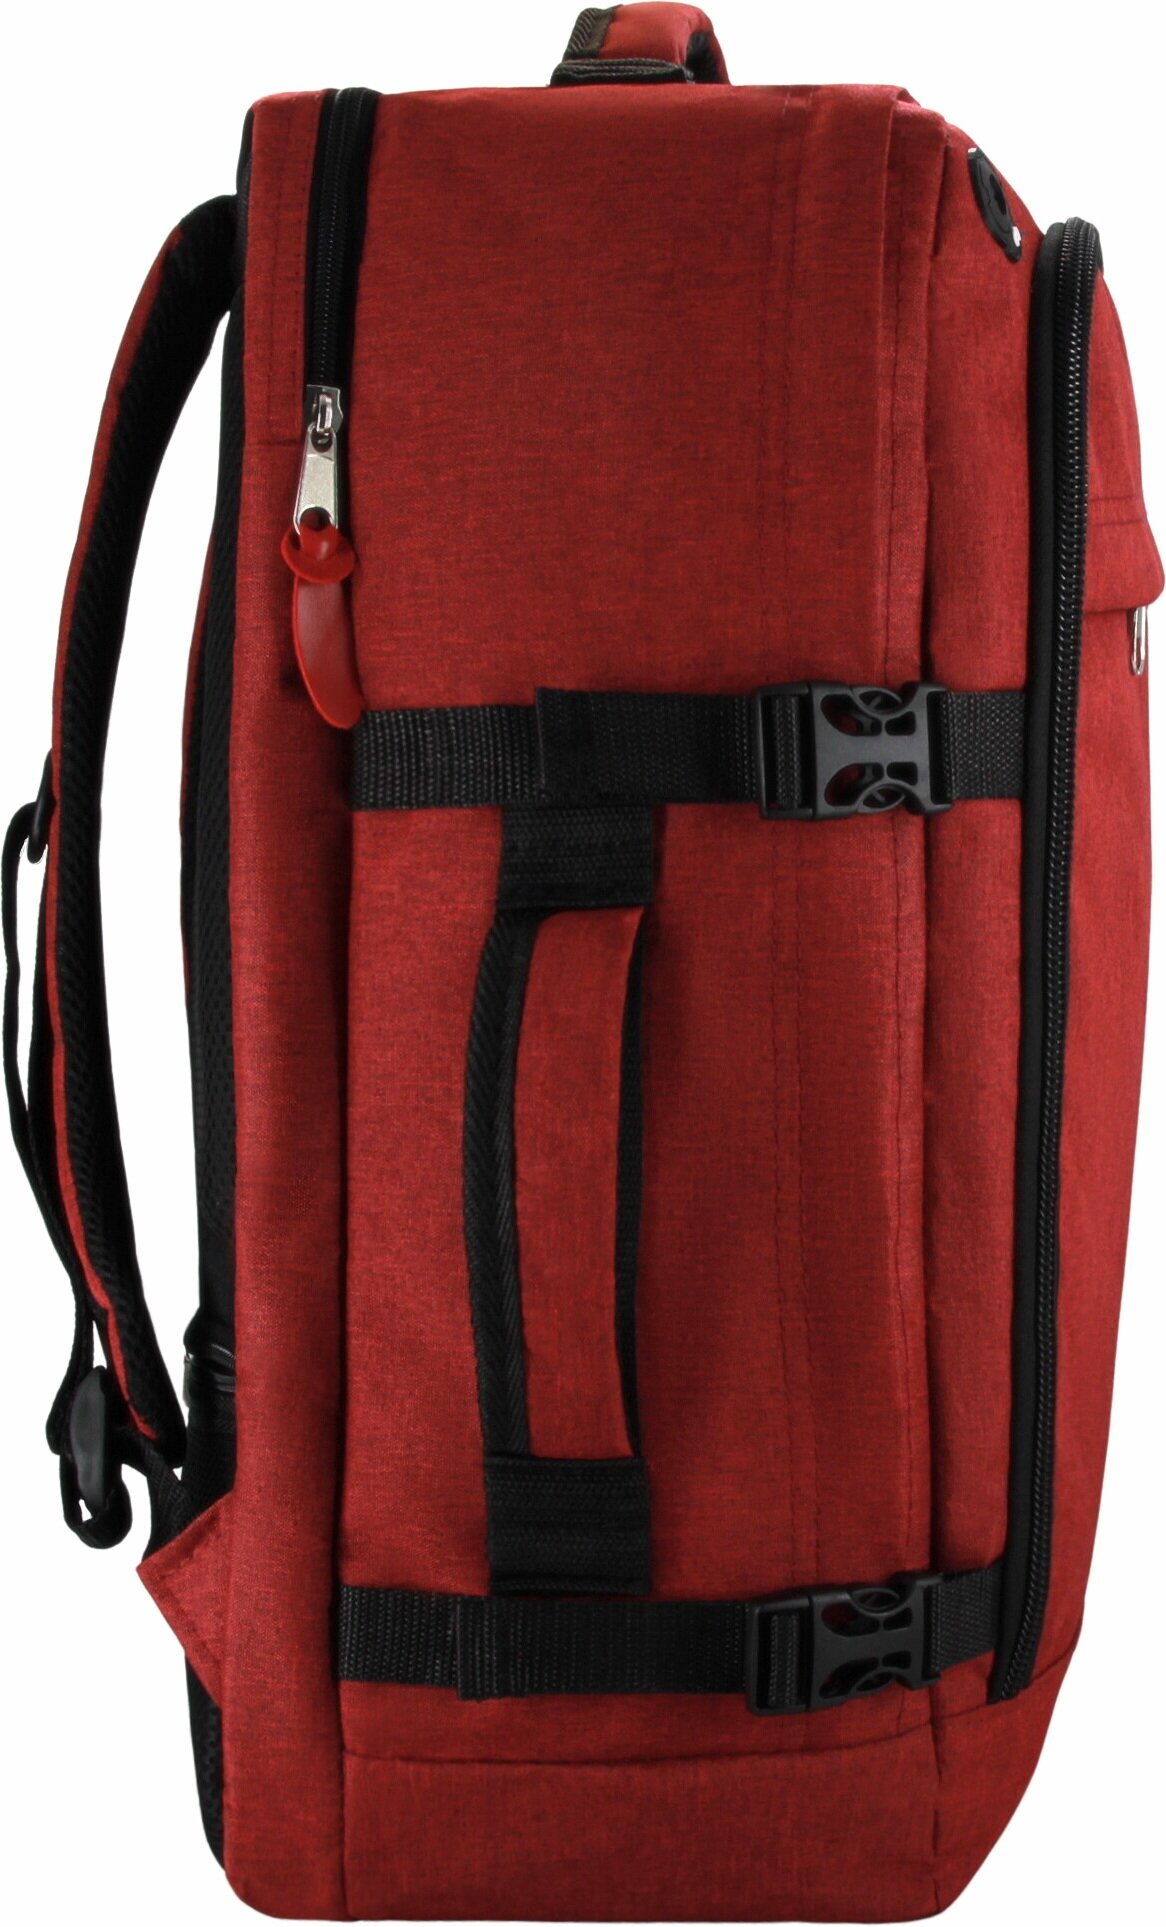 Сумка дорожная сумка-рюкзак Optimum, 44 л, 55х40х20 см, ручная кладь, отделение для ноутбука, фиксирующие ремни, водонепроницаемая, красный - фотография № 14